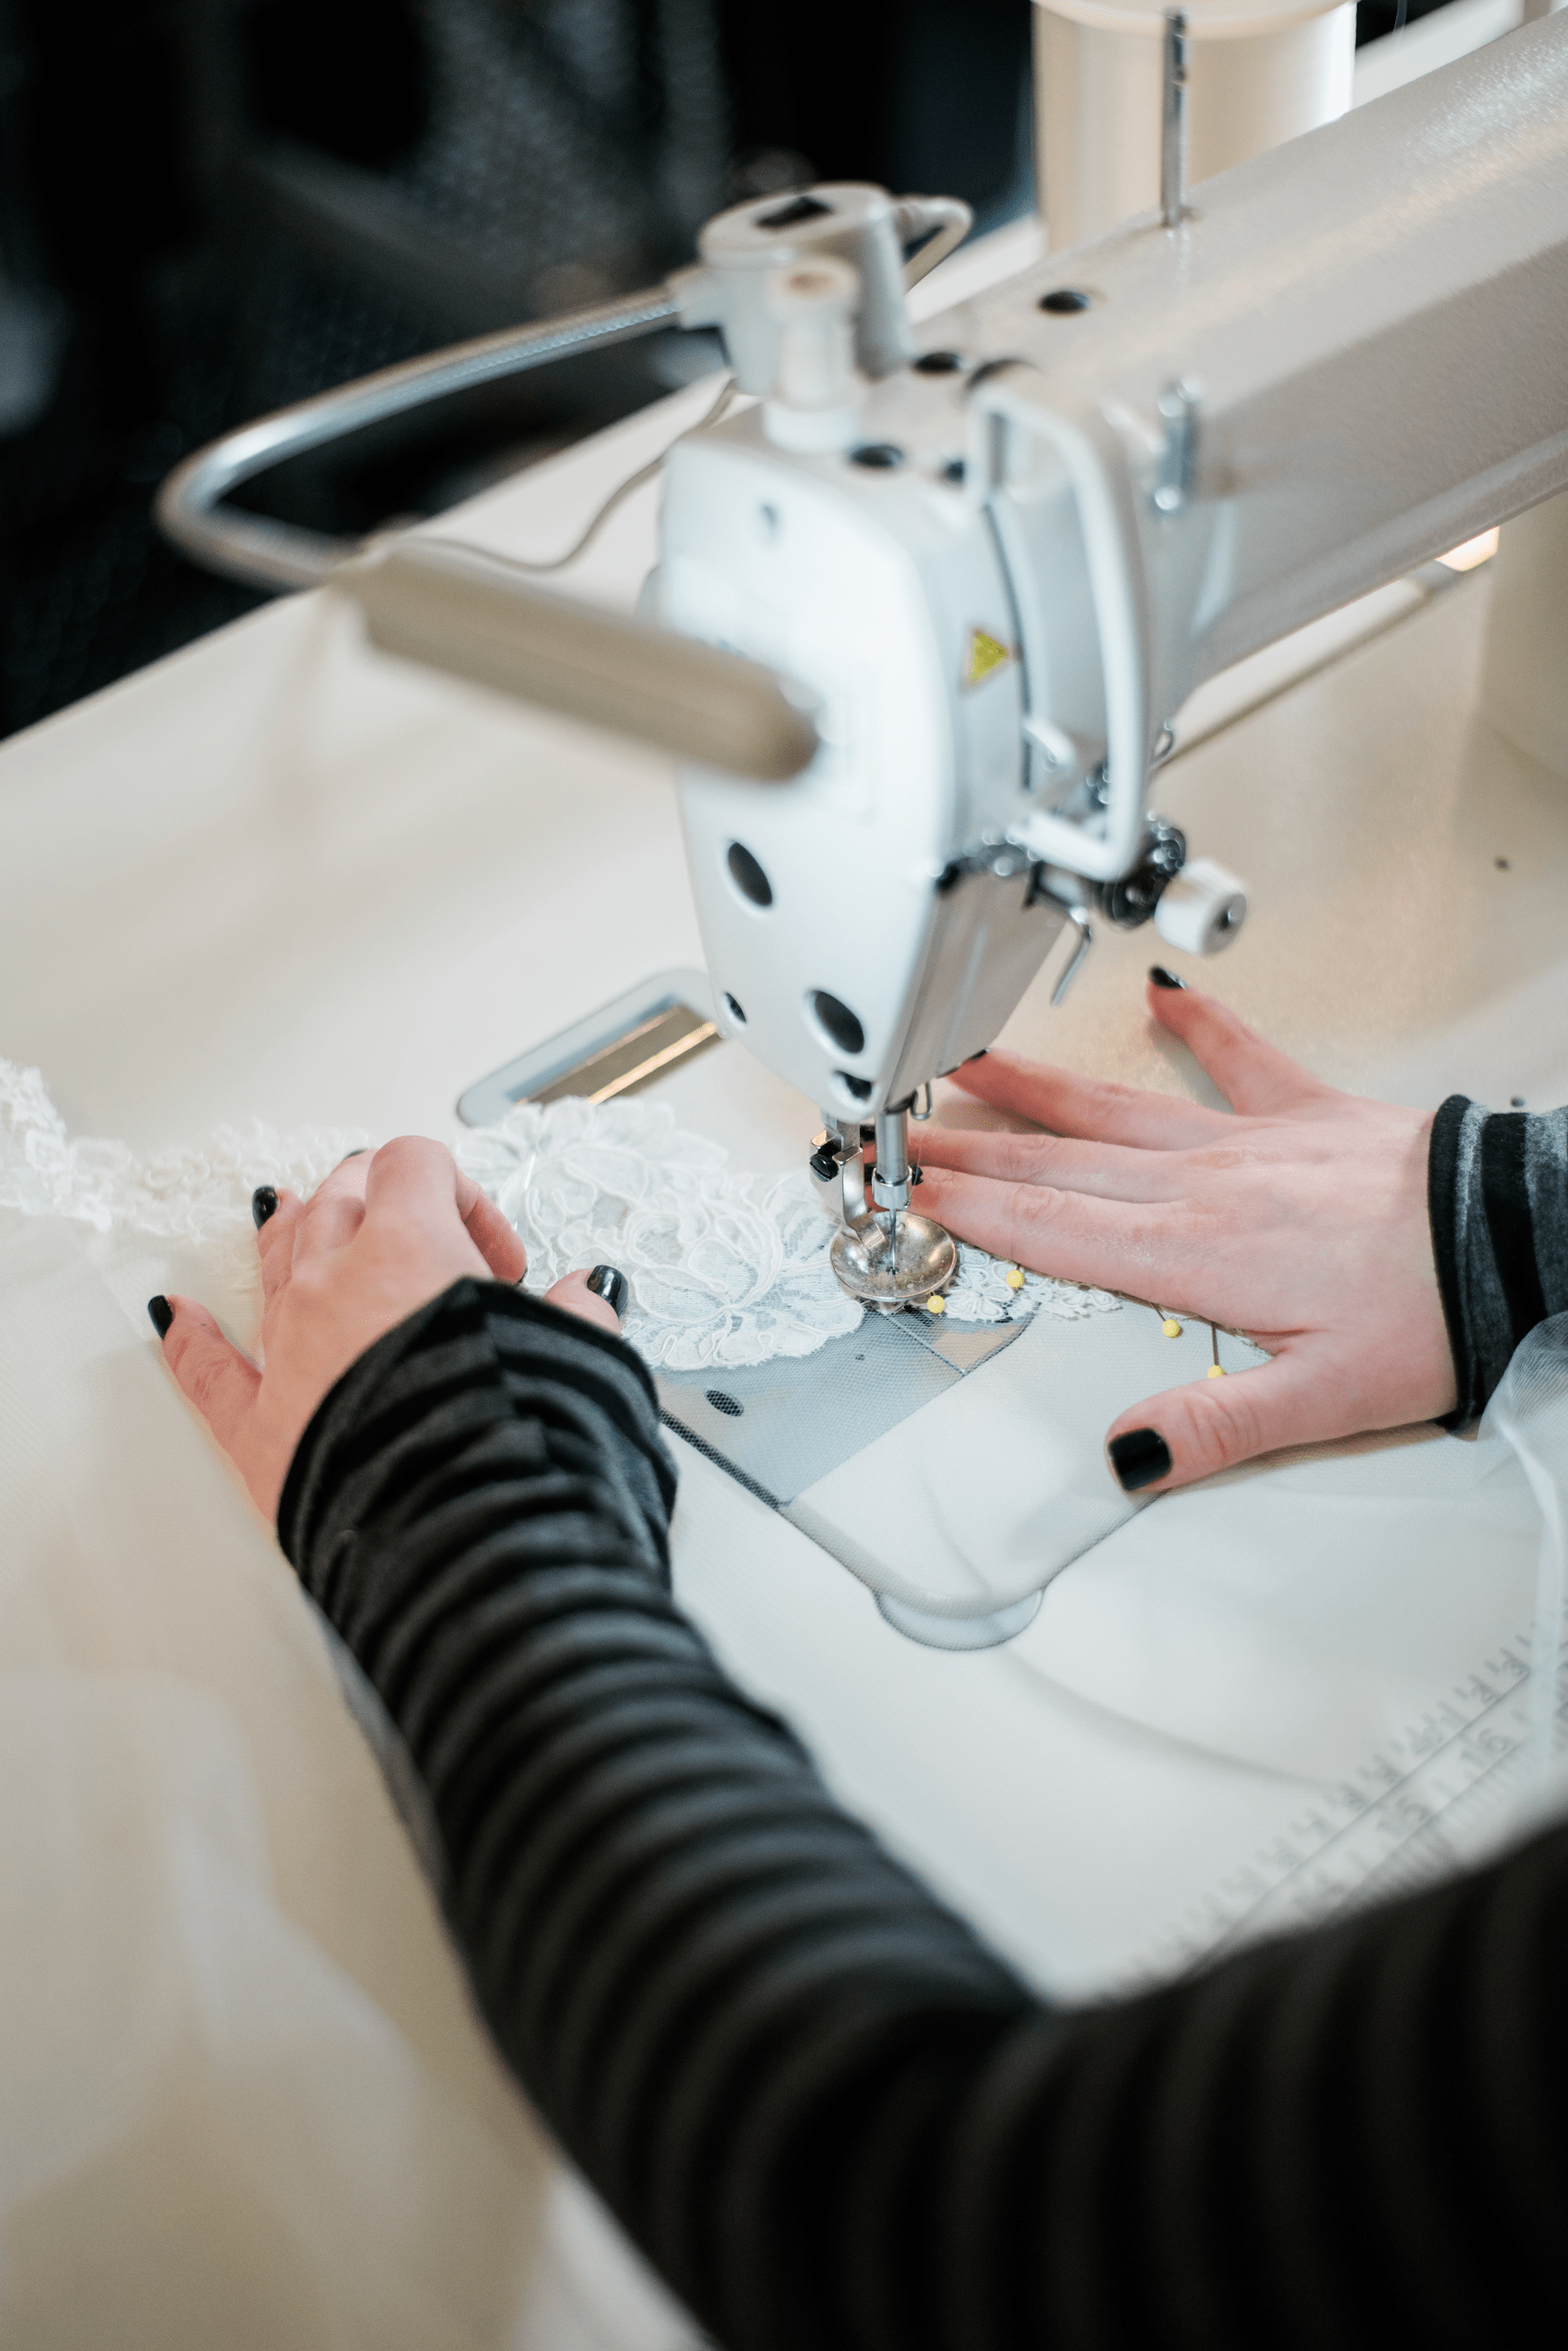 Apparel and Garment Manufacturing Software — Katana